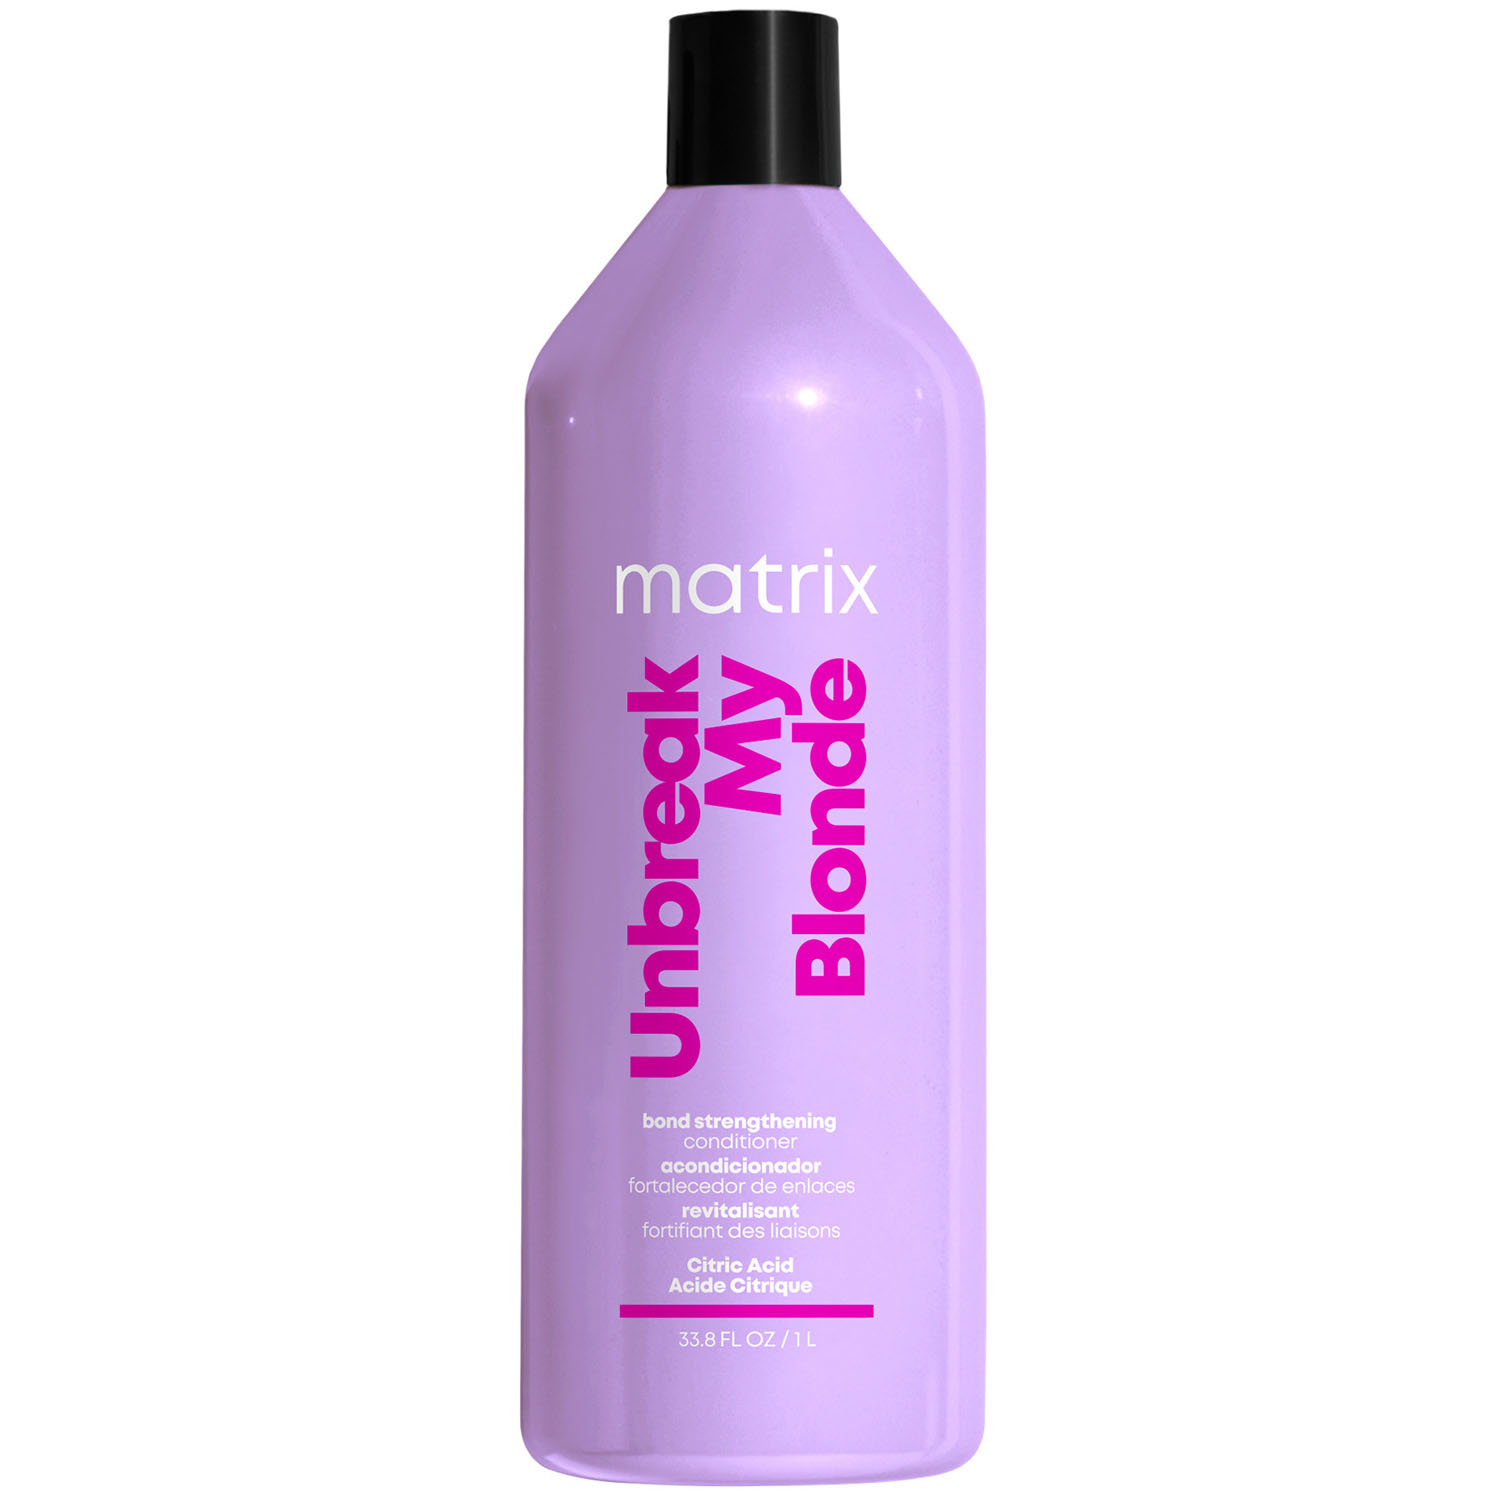 Matrix Укрепляющий кондиционер для осветленных волос, 1000 мл (Matrix, Total results) matrix укрепляющий кондиционер для осветленных волос 300 мл matrix total results